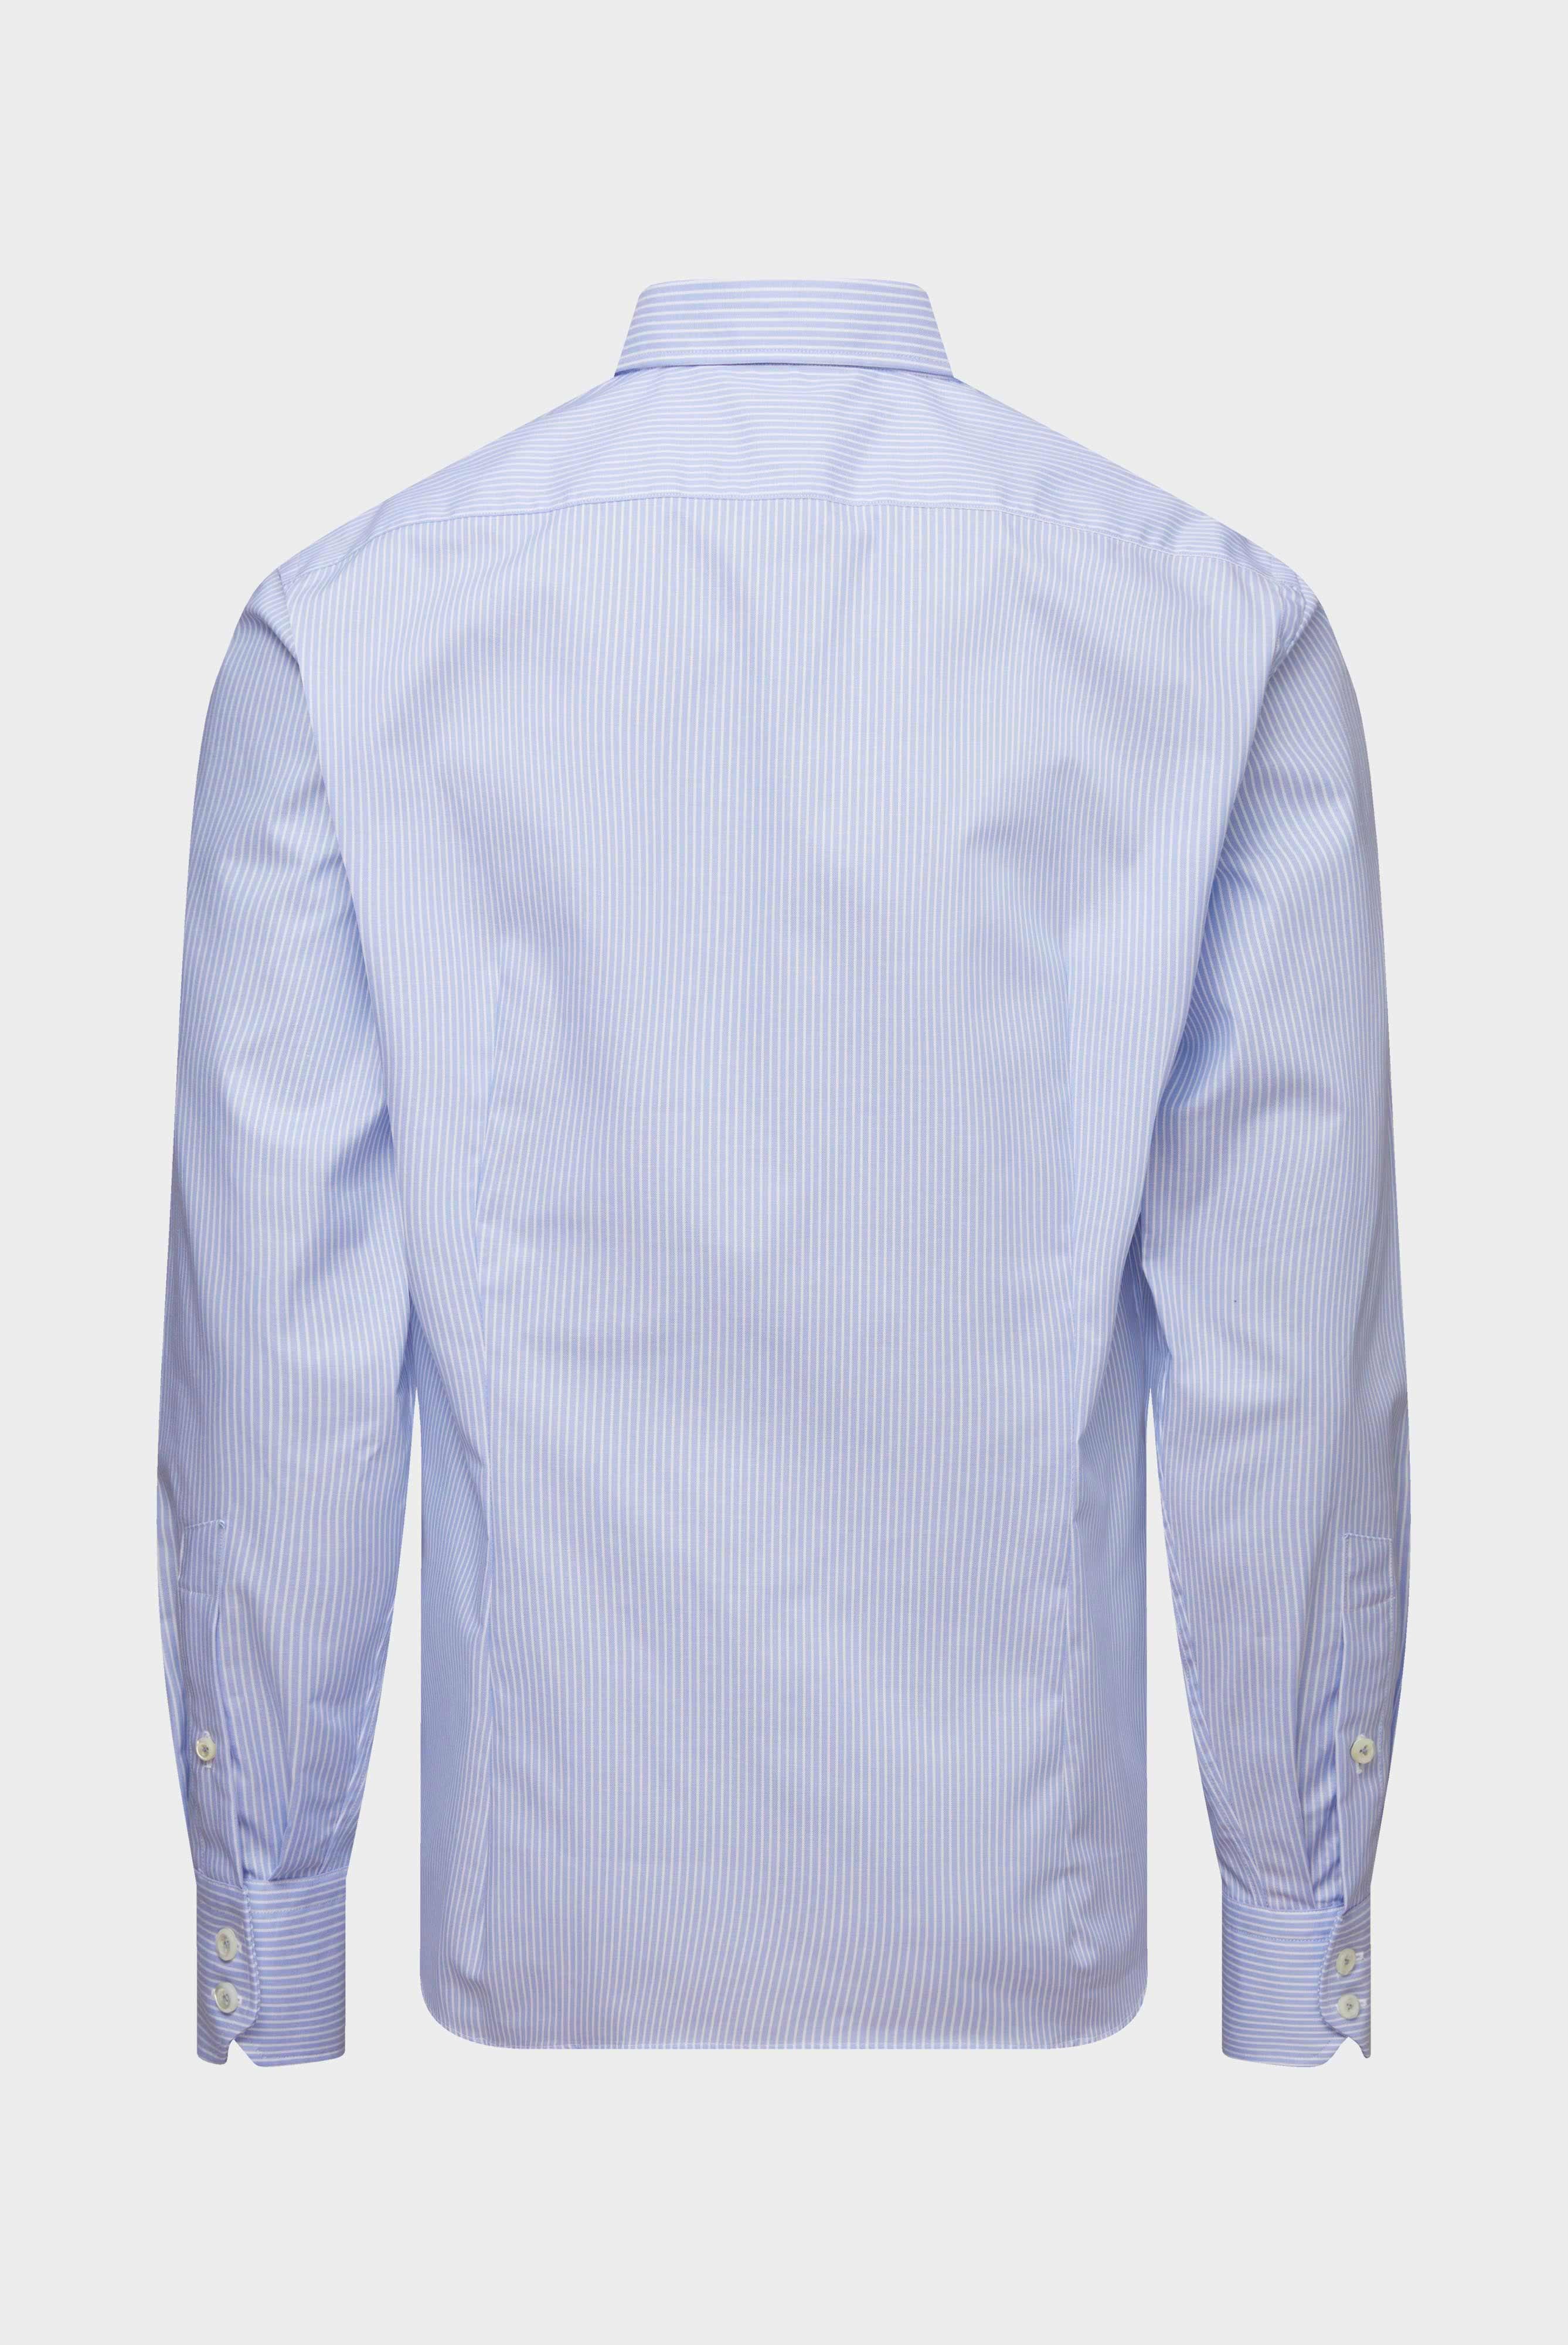 Bügelleichte Hemden+Bügelfreies Hemd aus Bio-Baumwolle Tailor Fit+20.3281.NV.166007.730.39